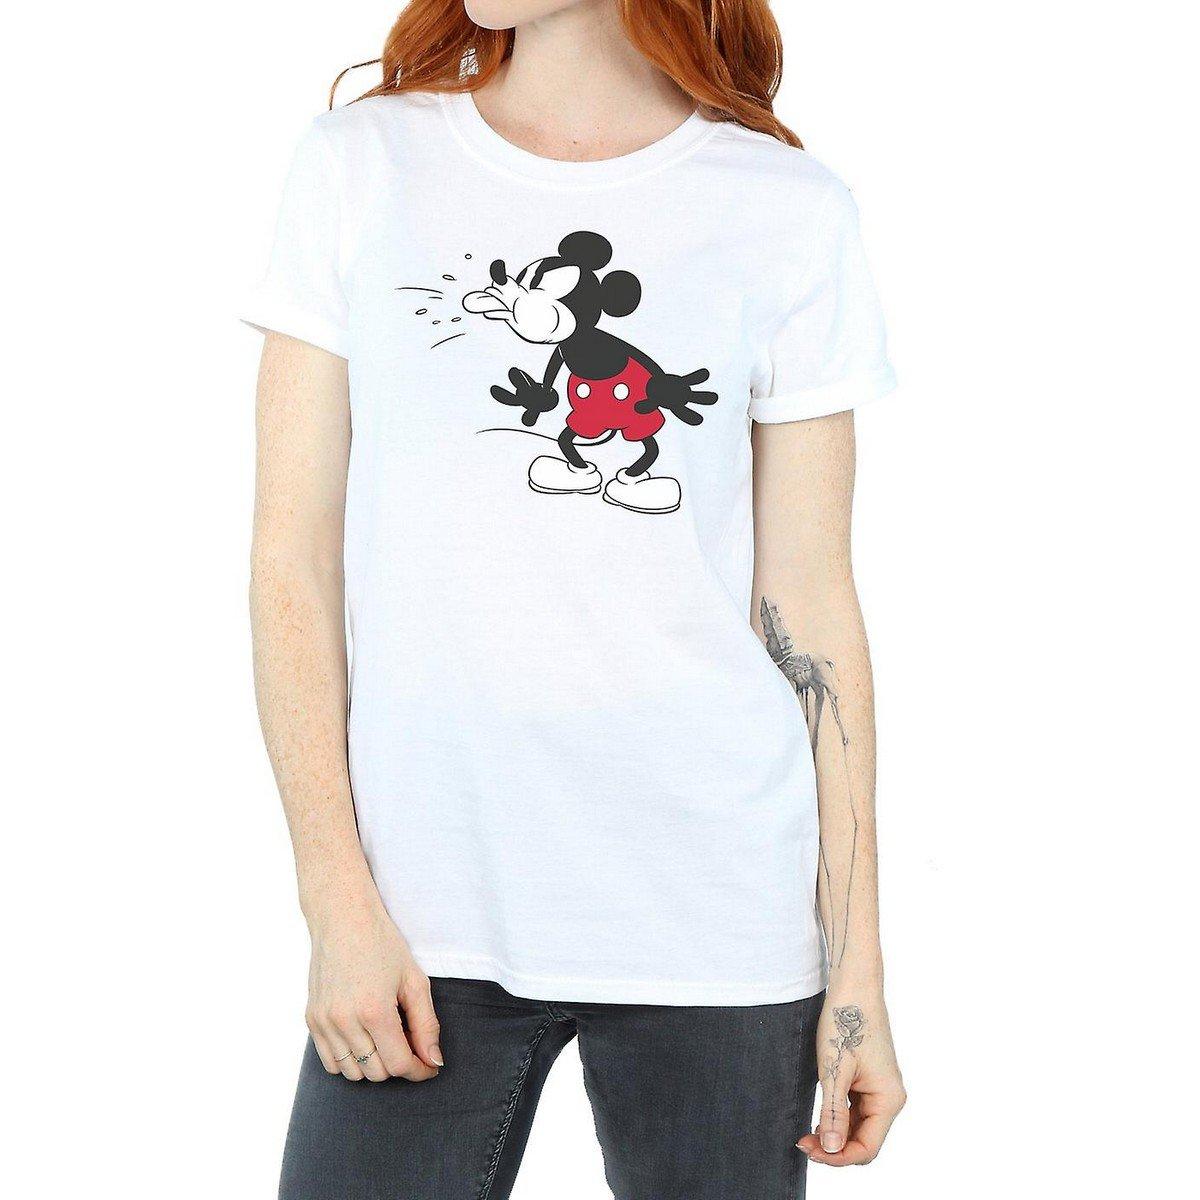 Tshirt Damen Weiss XL von Disney